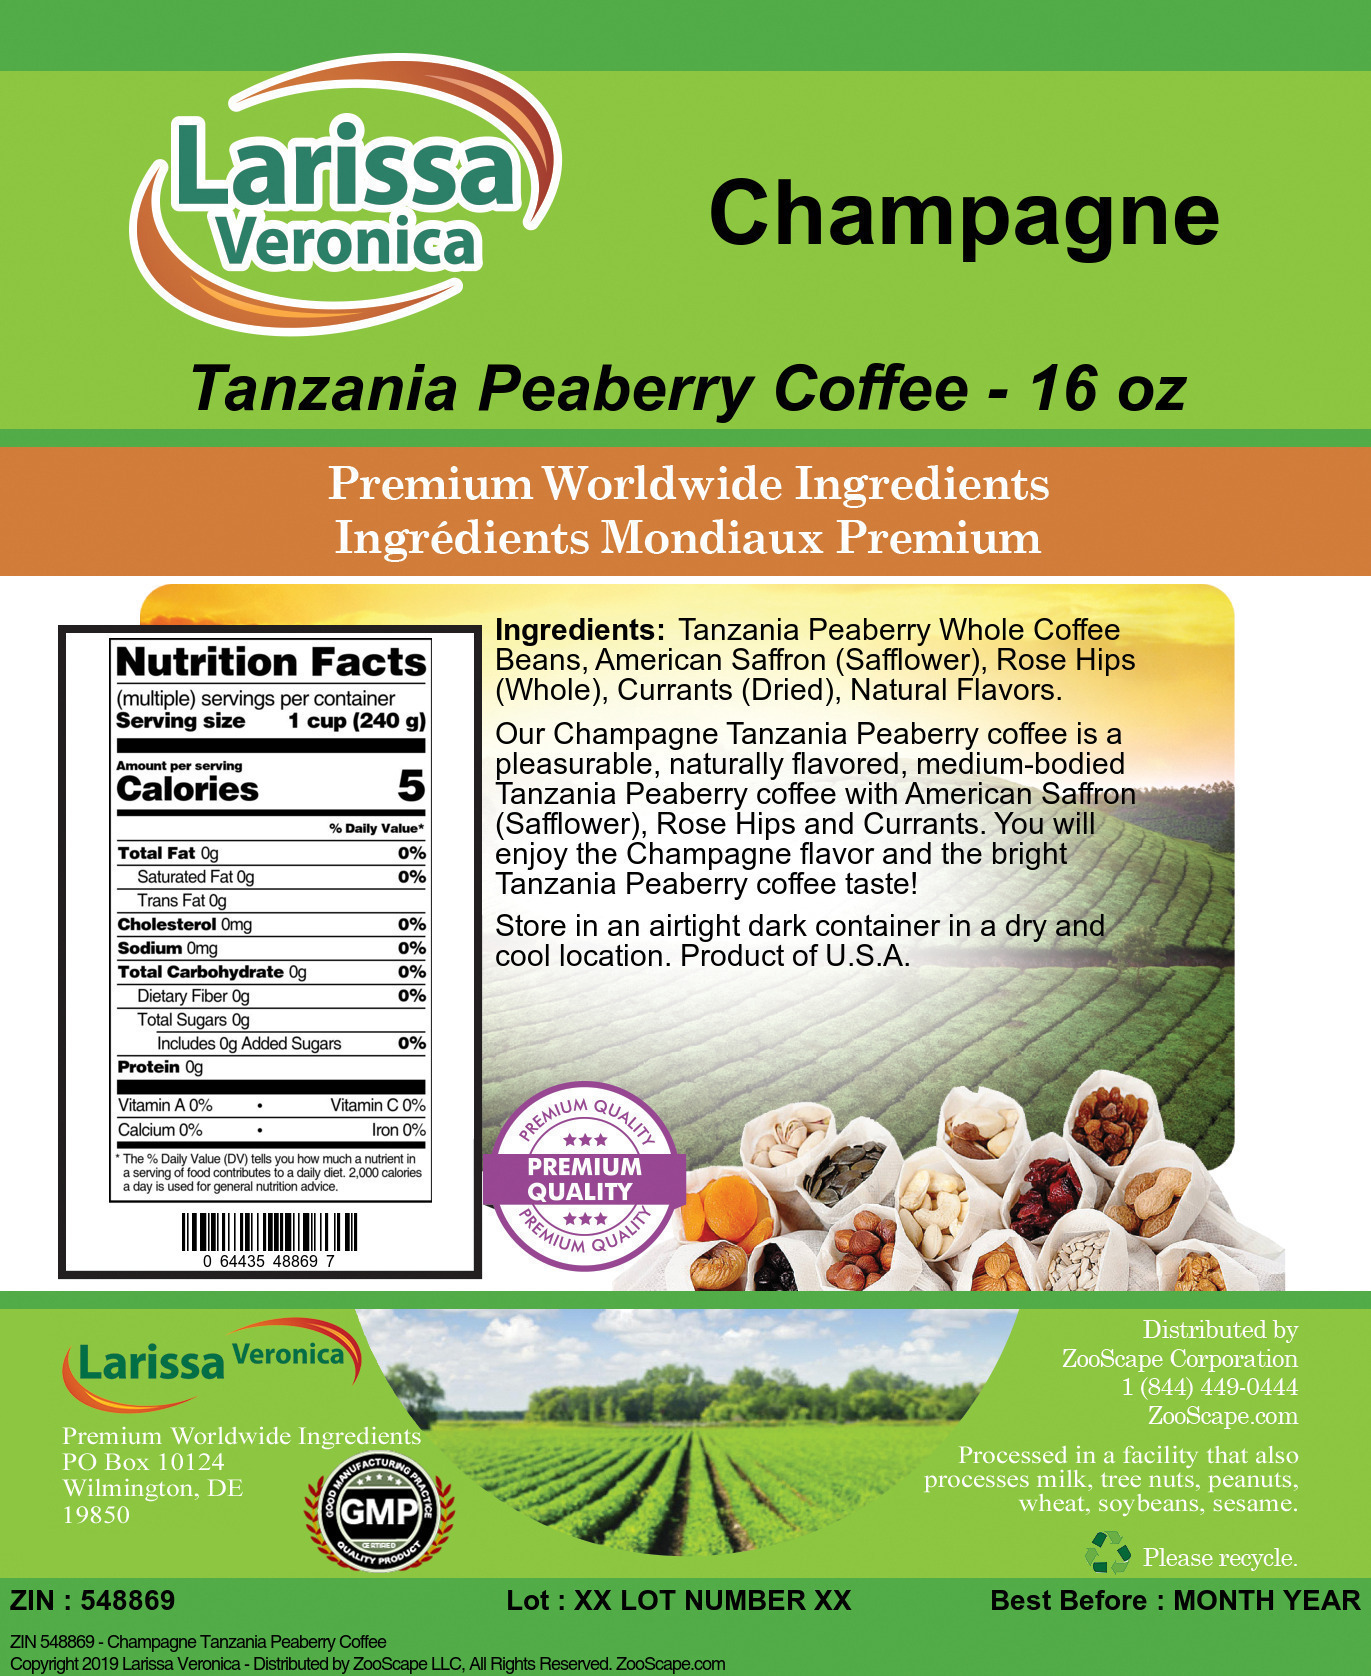 Champagne Tanzania Peaberry Coffee - Label